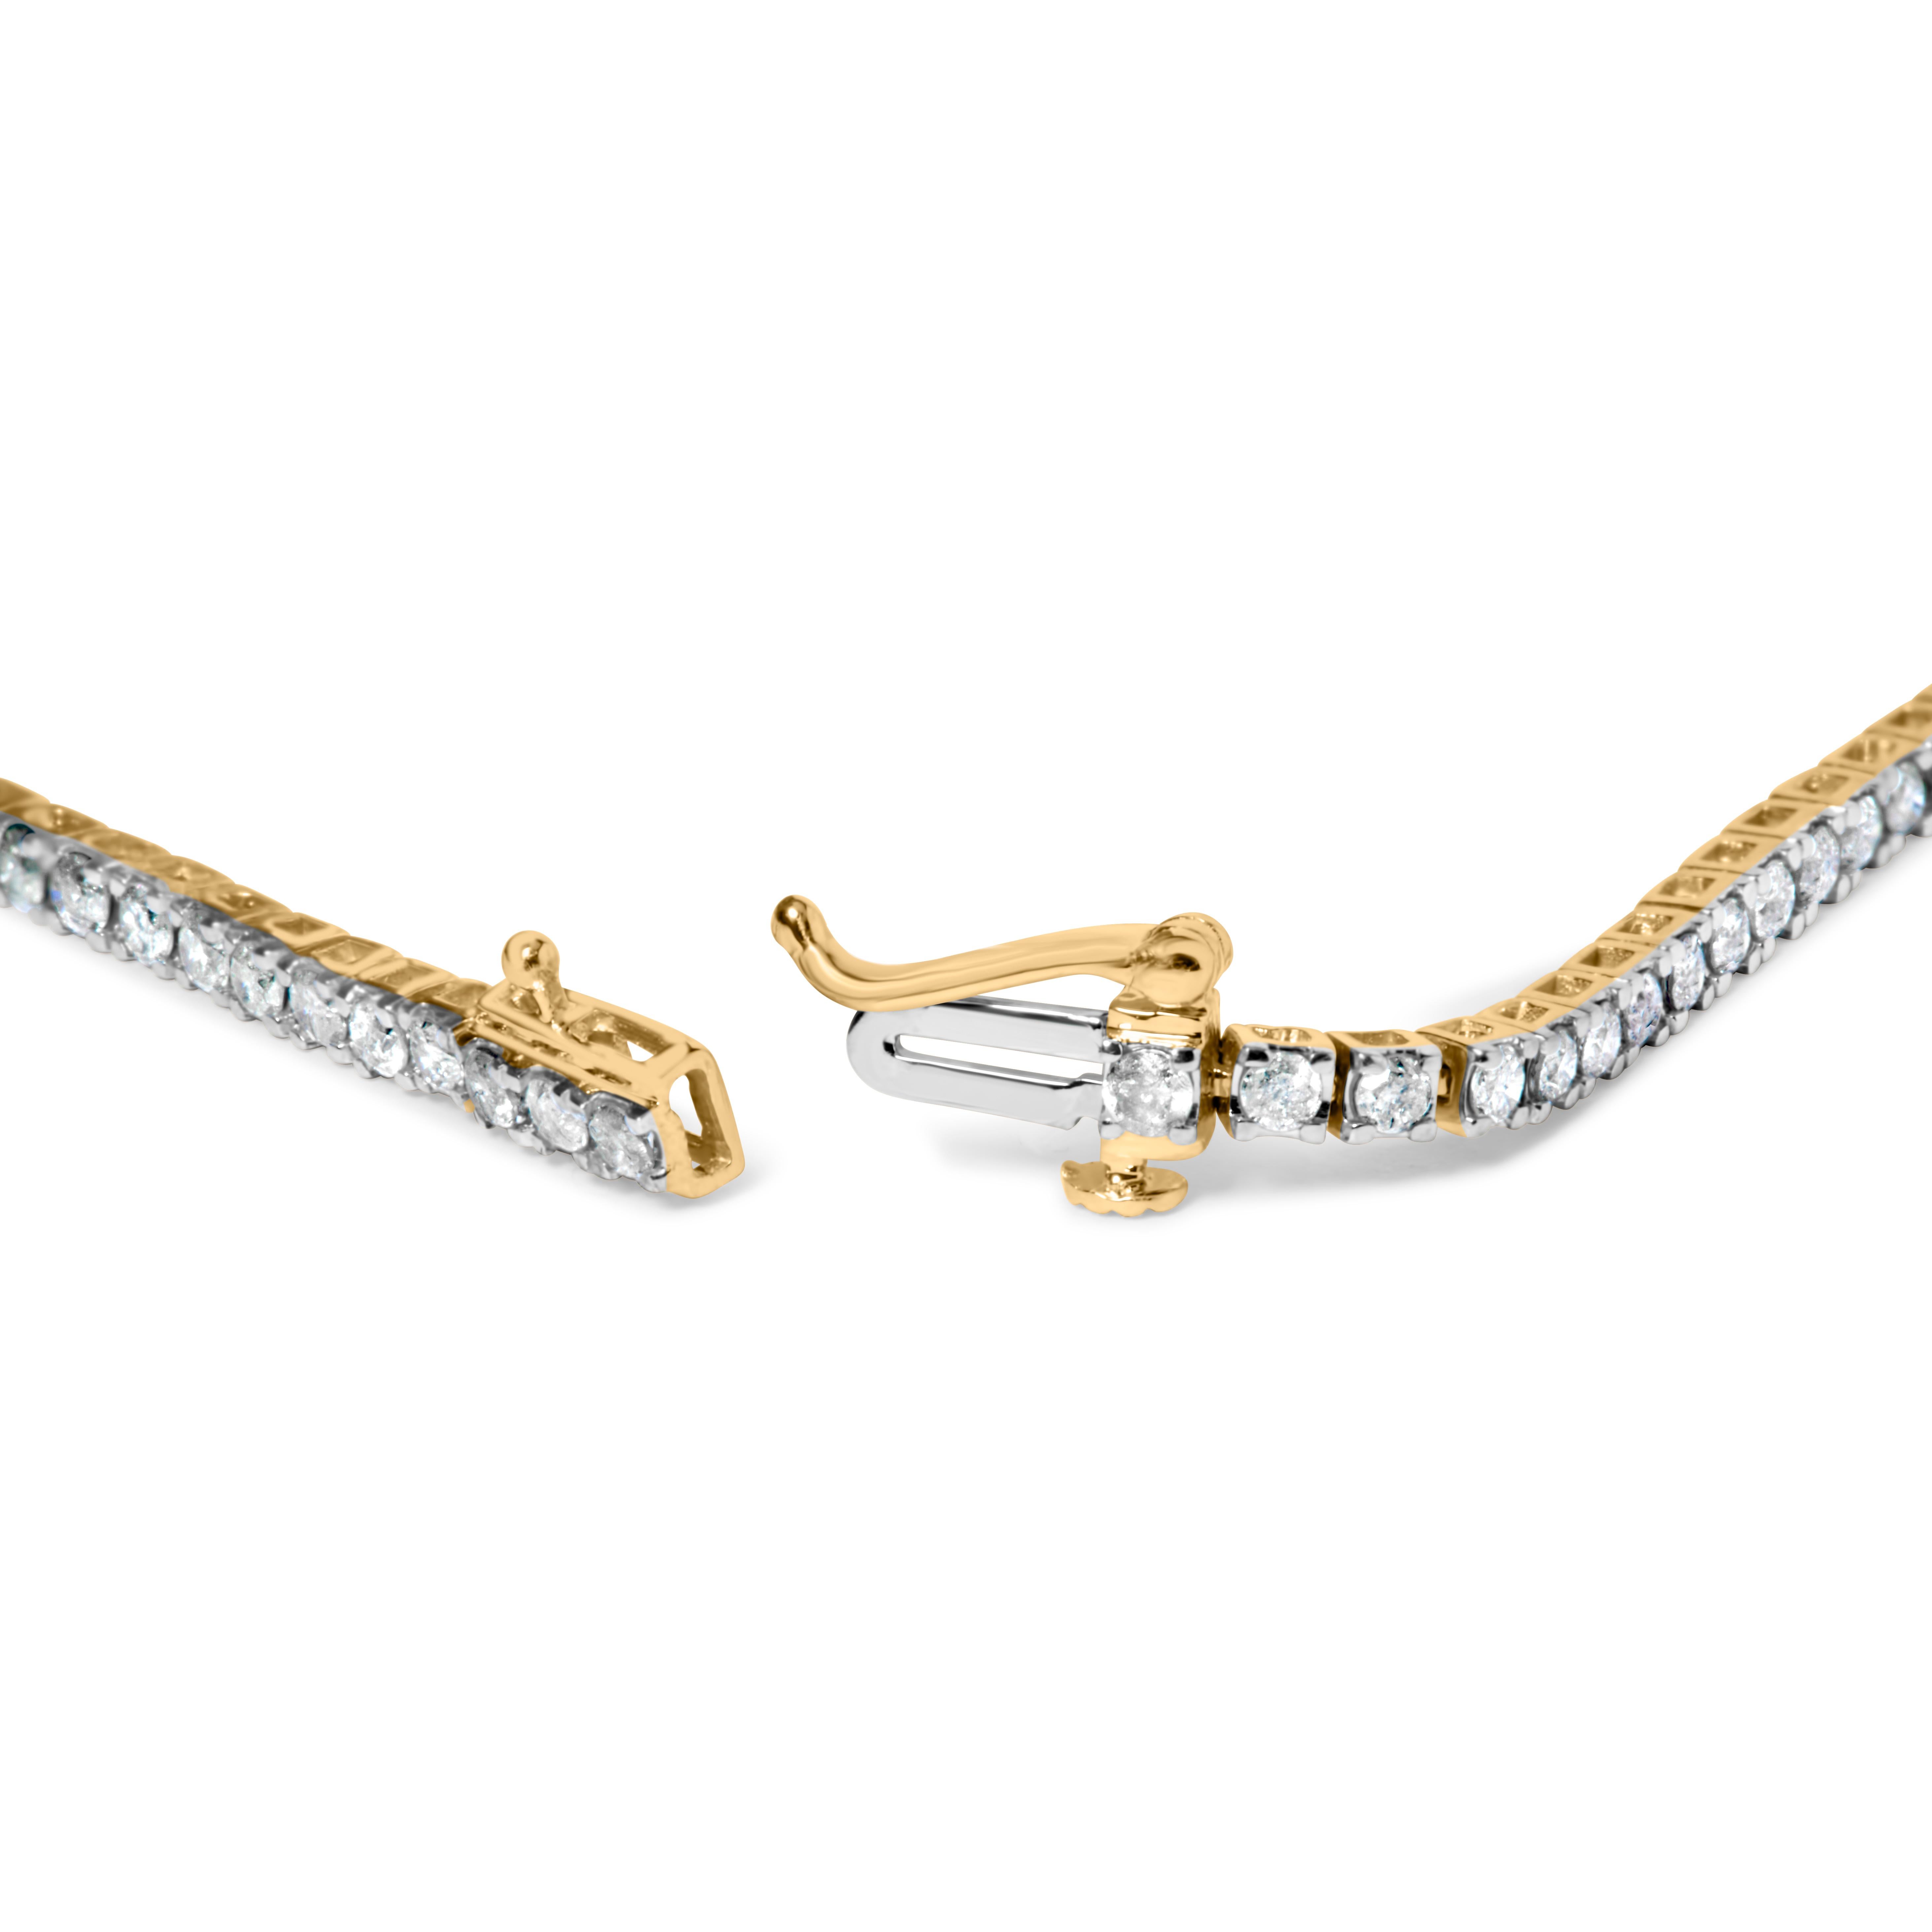 Erhöhen Sie Ihre Eleganz mit unserem luxuriösen Diamant-Tennisarmband, das aus 925er Sterlingsilber gefertigt und mit 2 Mikron 14-karätigem Gelbgold überzogen ist. Eine 2-Mikron-Beschichtung ist wesentlich dicker als eine Standardbeschichtung und